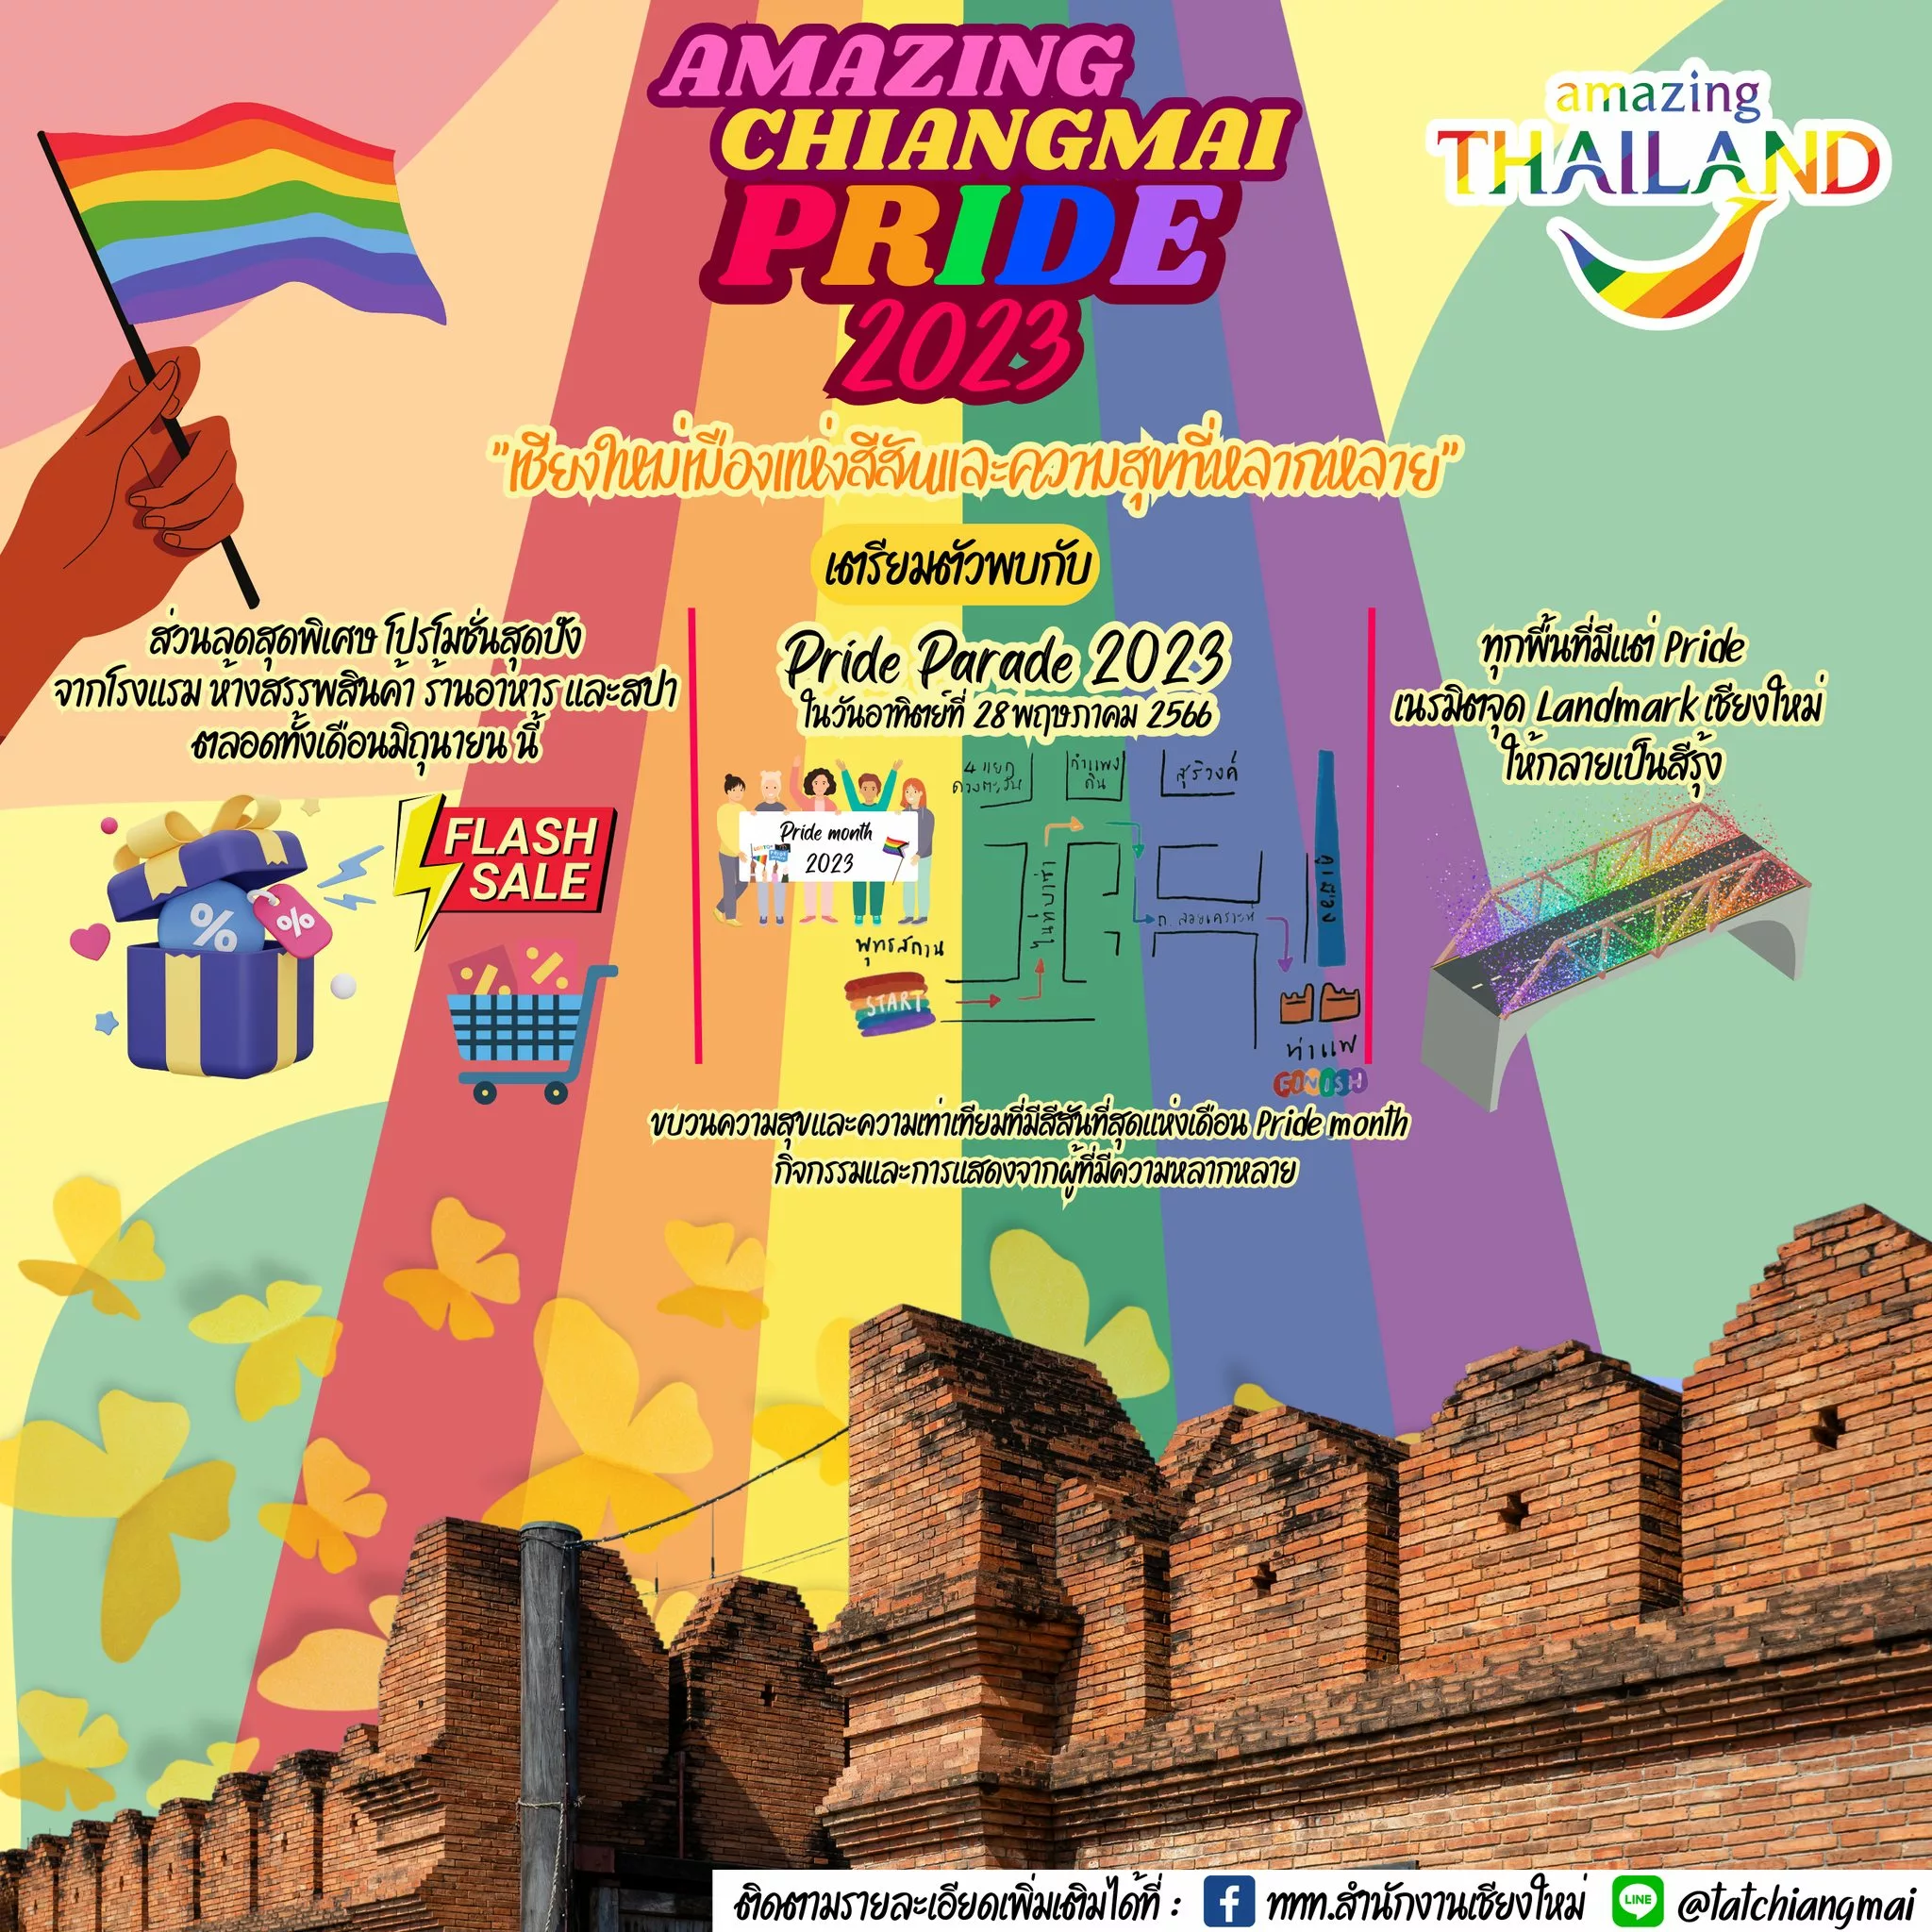 AMAZING Chiang Mai Pride 2023 จะเริ่มตั้งแต่วันที่ 27 พฤษภาคม - 30 มิถุยายน 2566